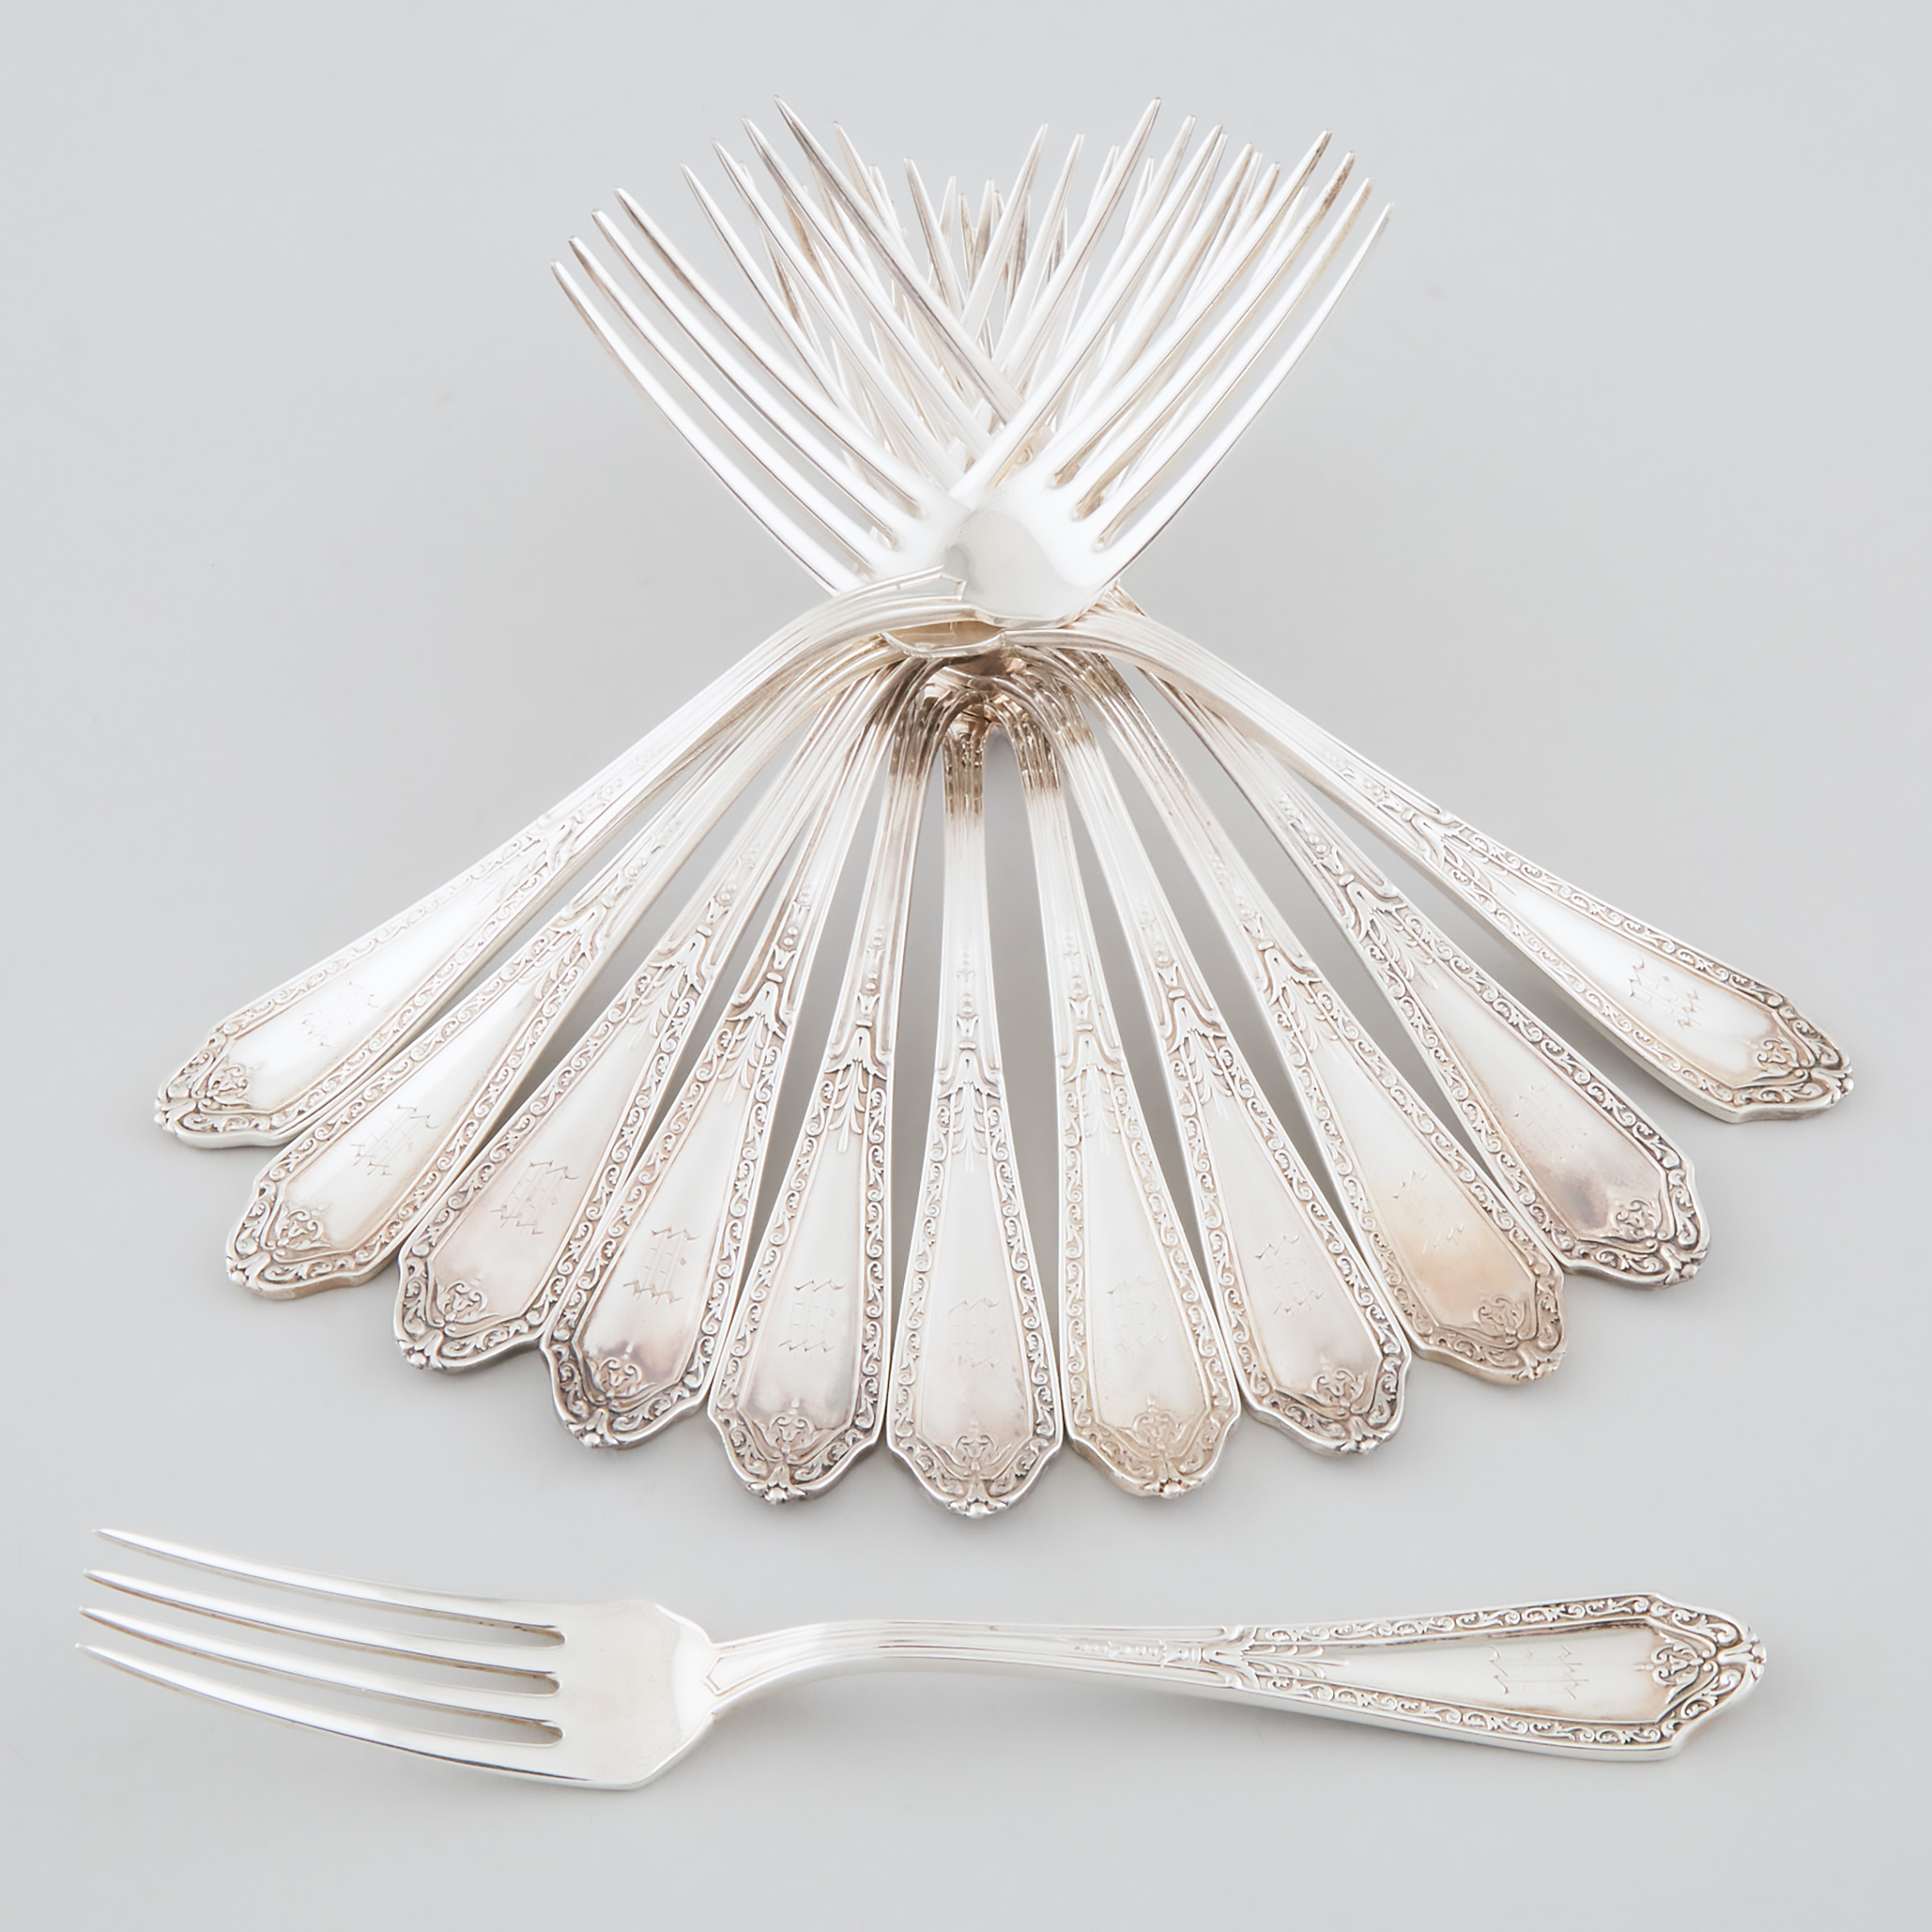 Twelve Canadian Silver Dinner Forks,